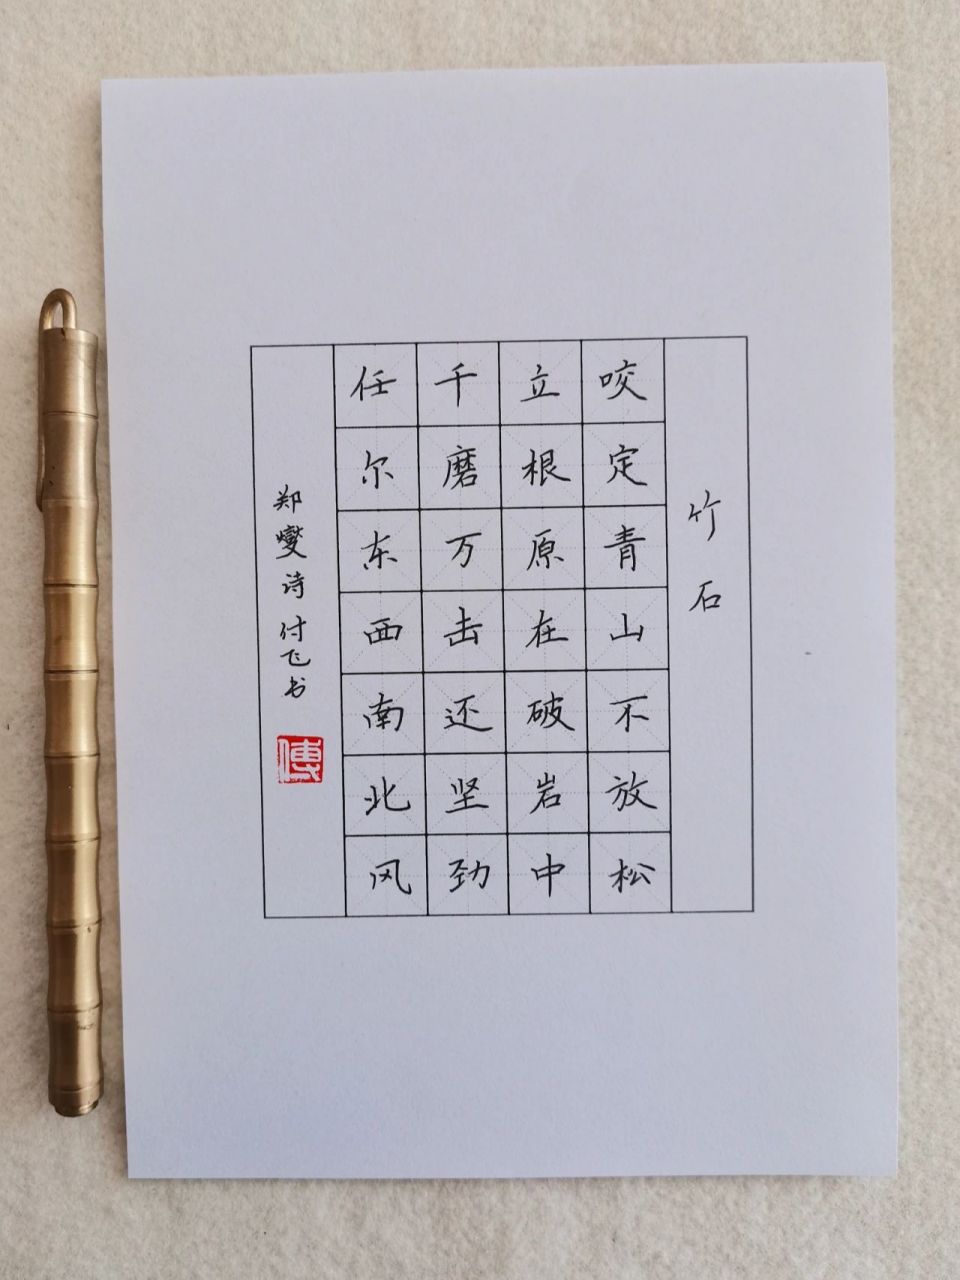 竹石书法作品楷书硬笔图片